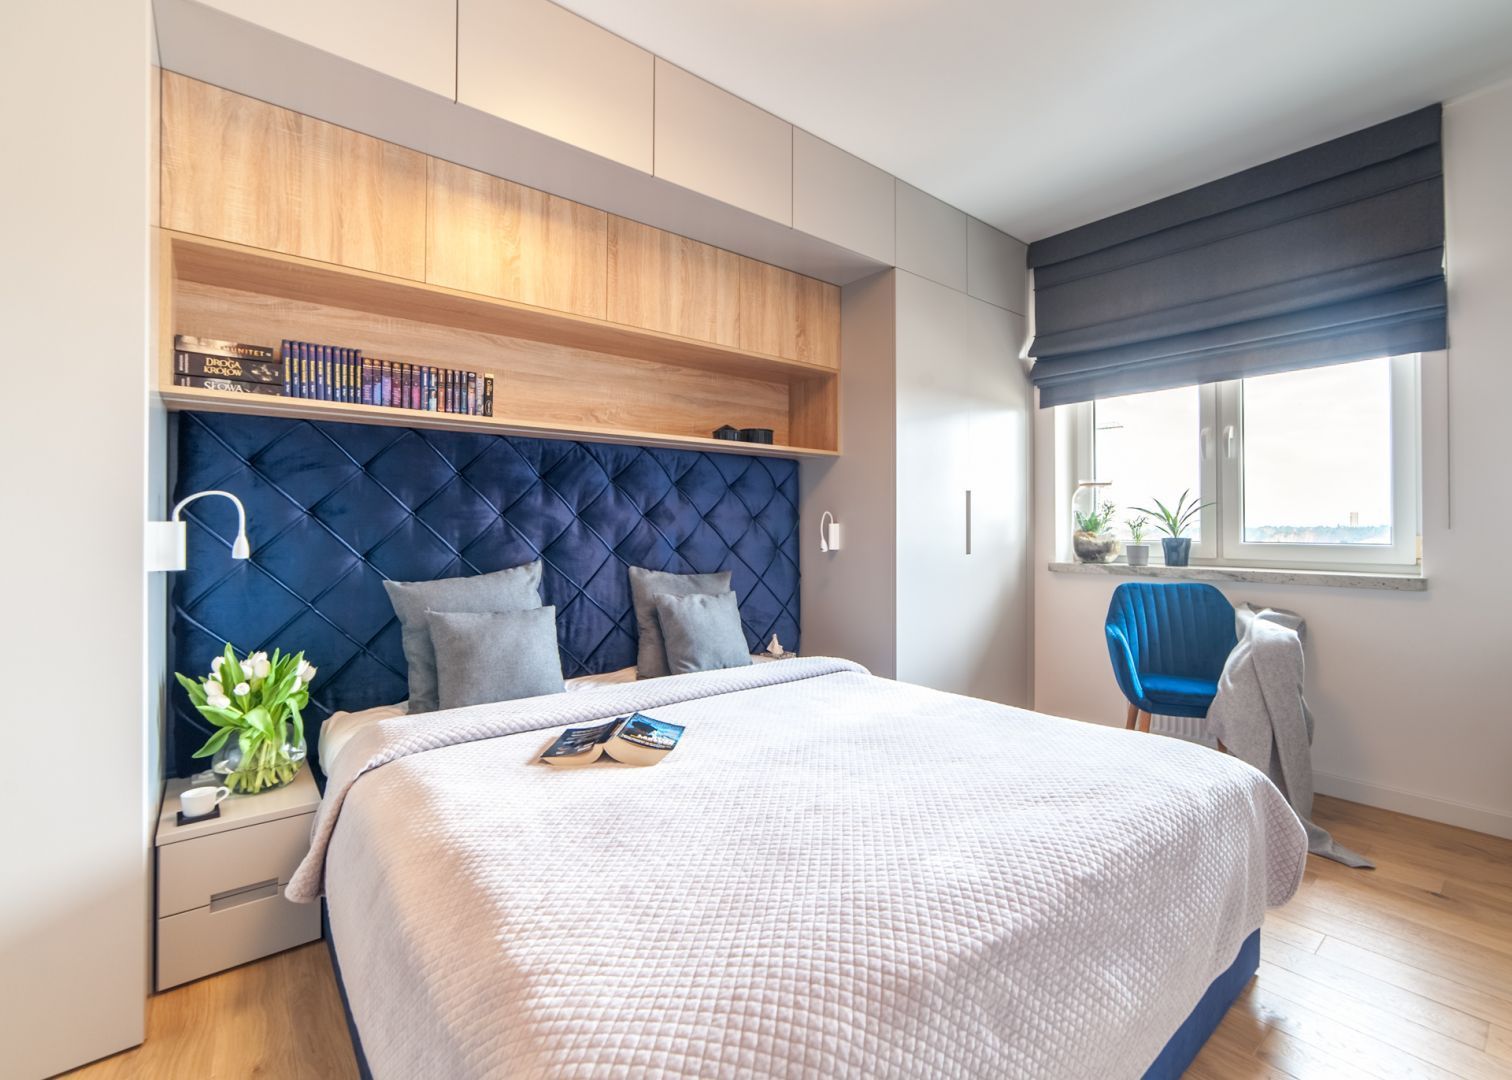 Ściana za łóżkiem w sypialni wykończona jest tapicerowany zagłówkiem w niebieskim kolorze. Projekt: Ewelina Para, RED design. Fot. Adam Woropiński www.bardzo.photo.pl